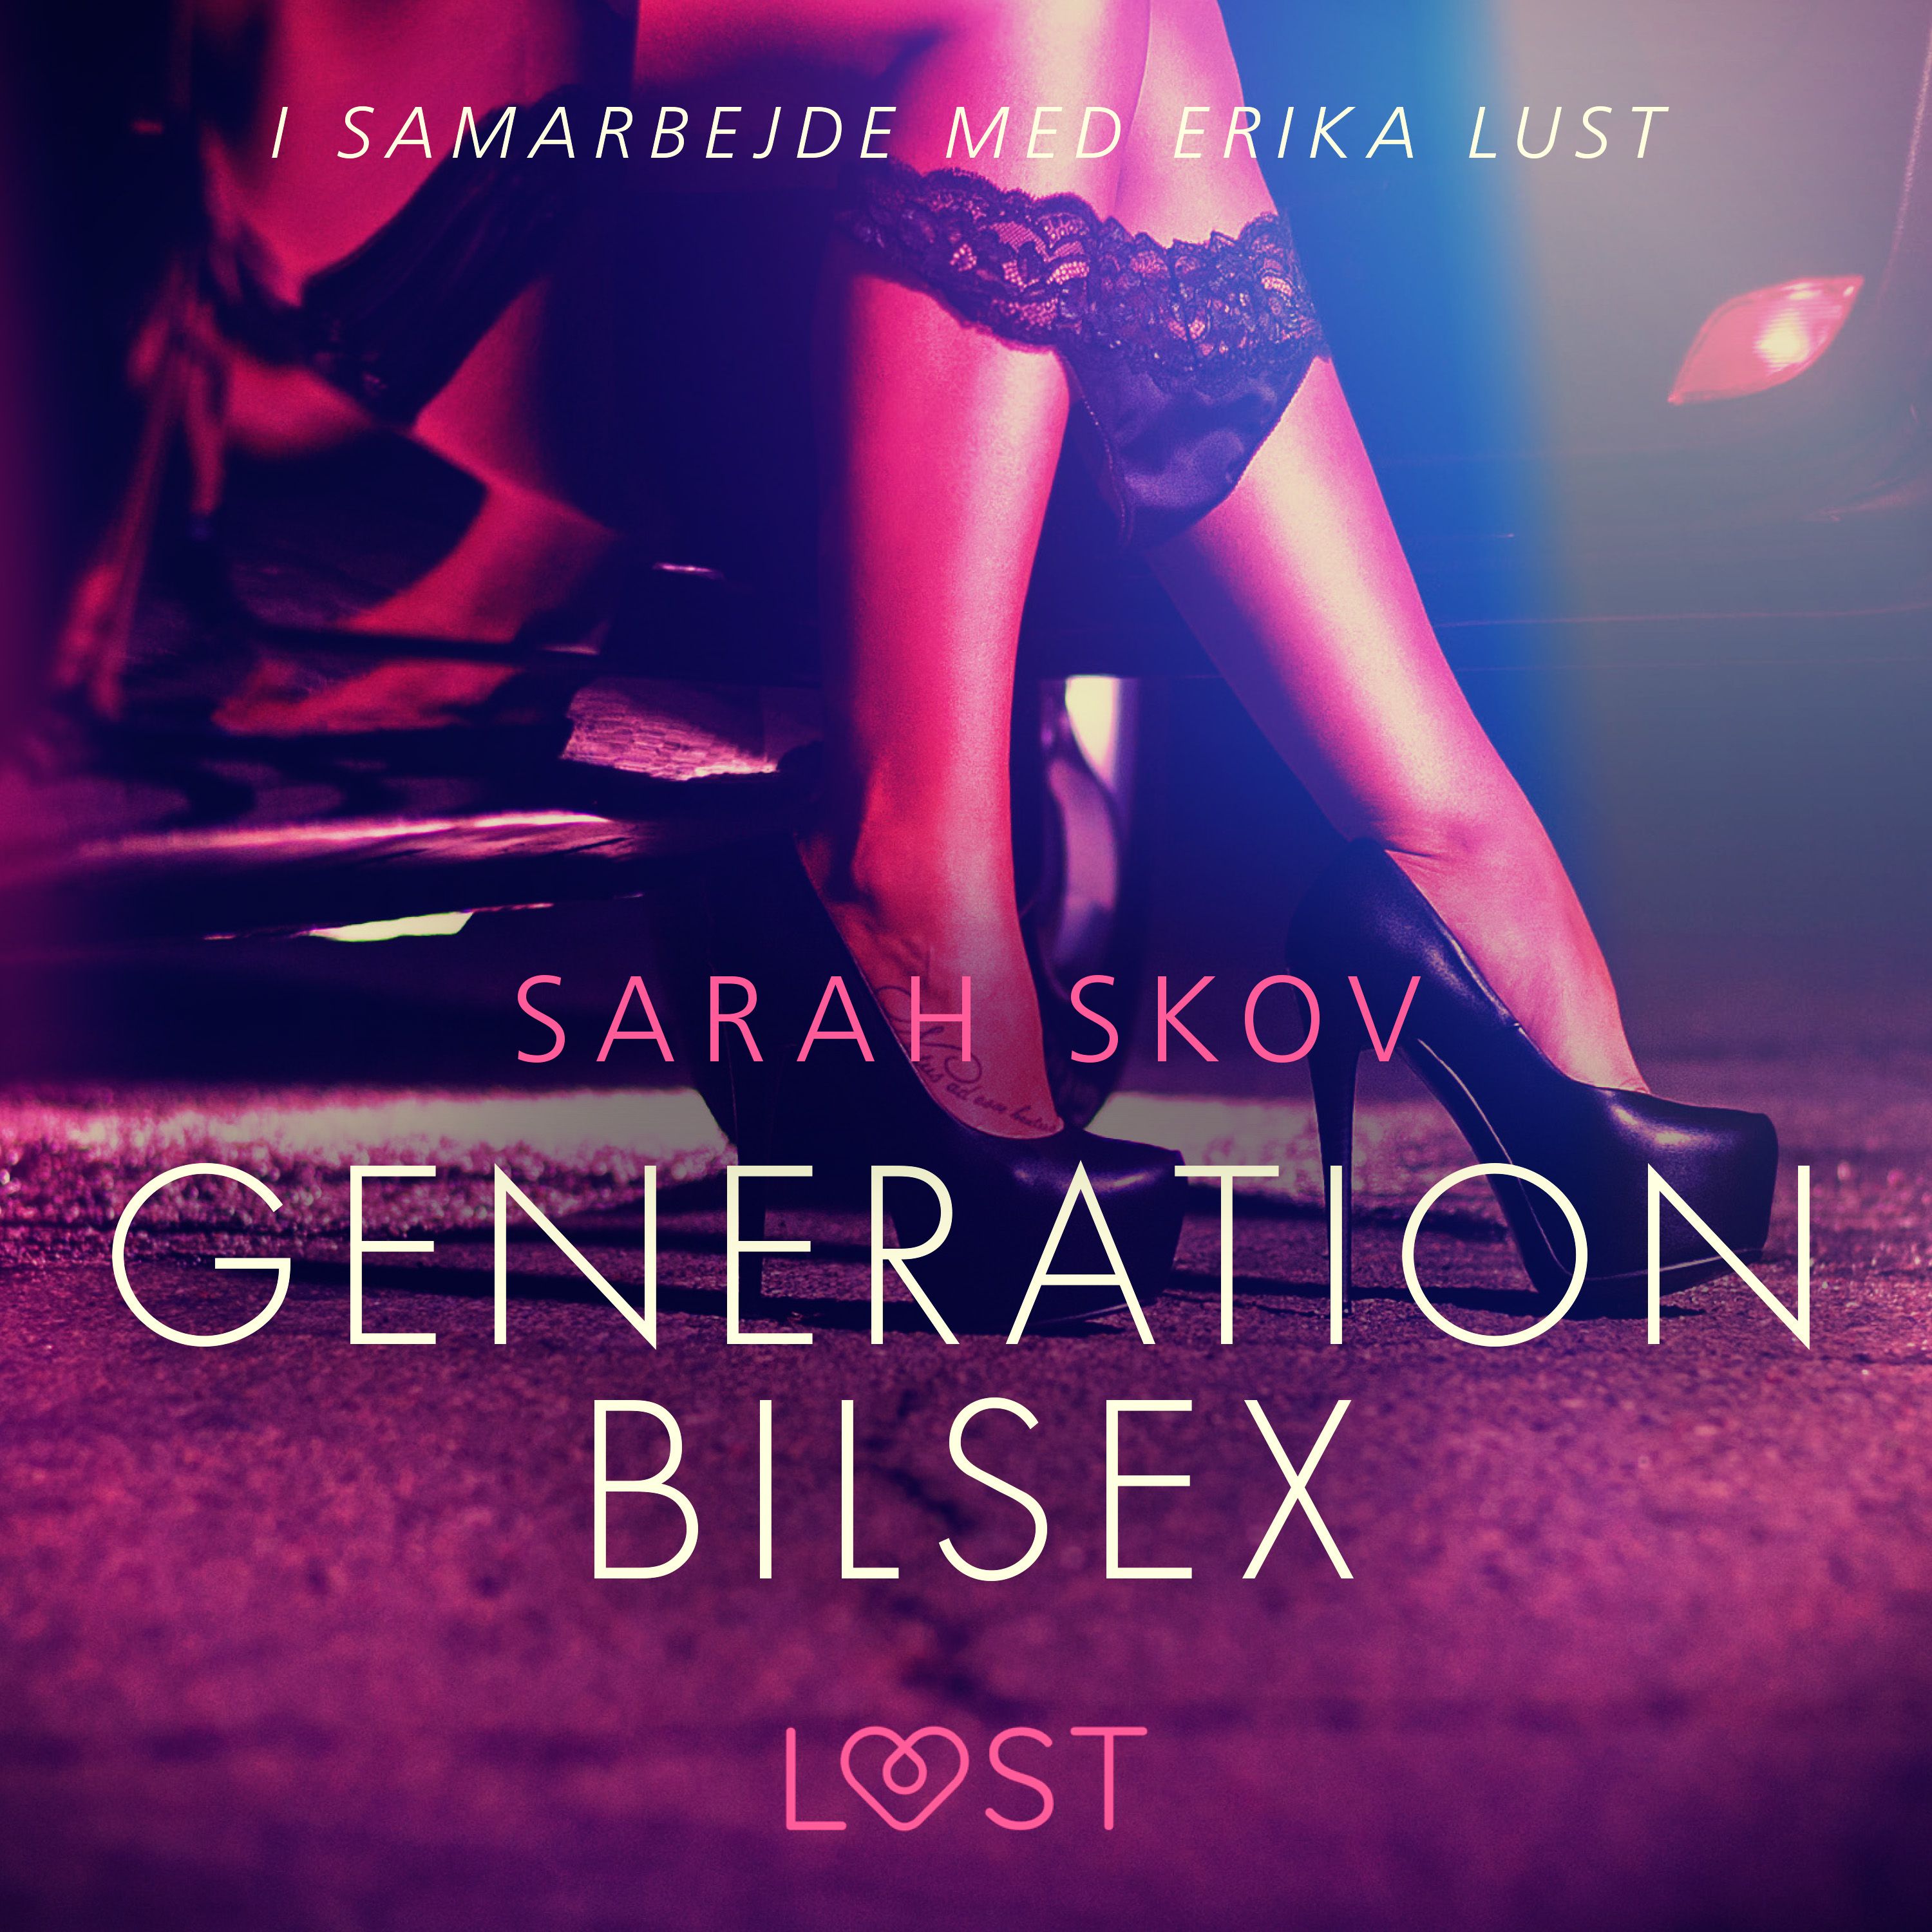 Generation Bilsex, ljudbok av Sarah Skov